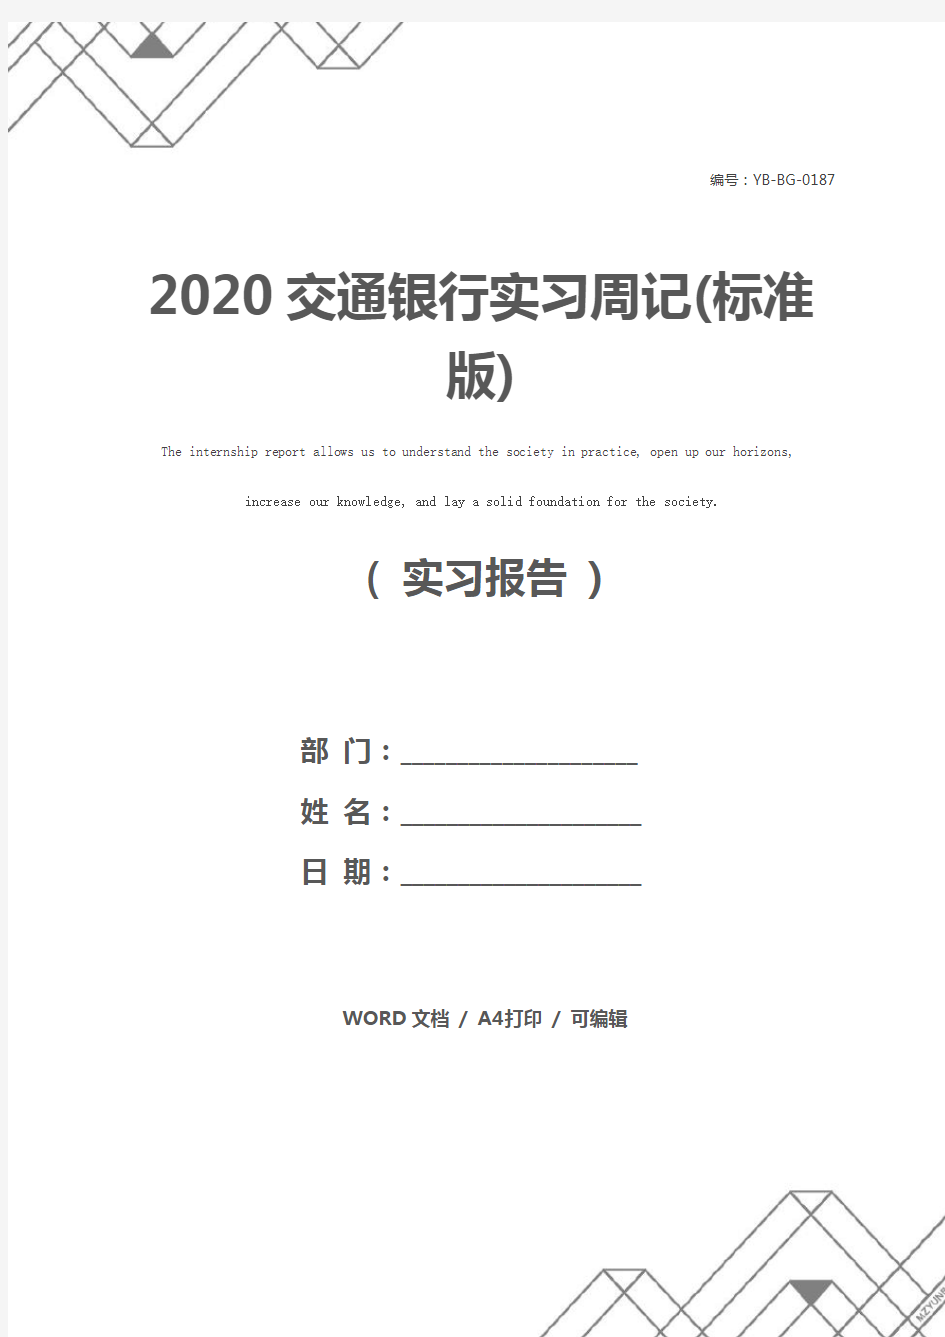 2020交通银行实习周记(标准版)